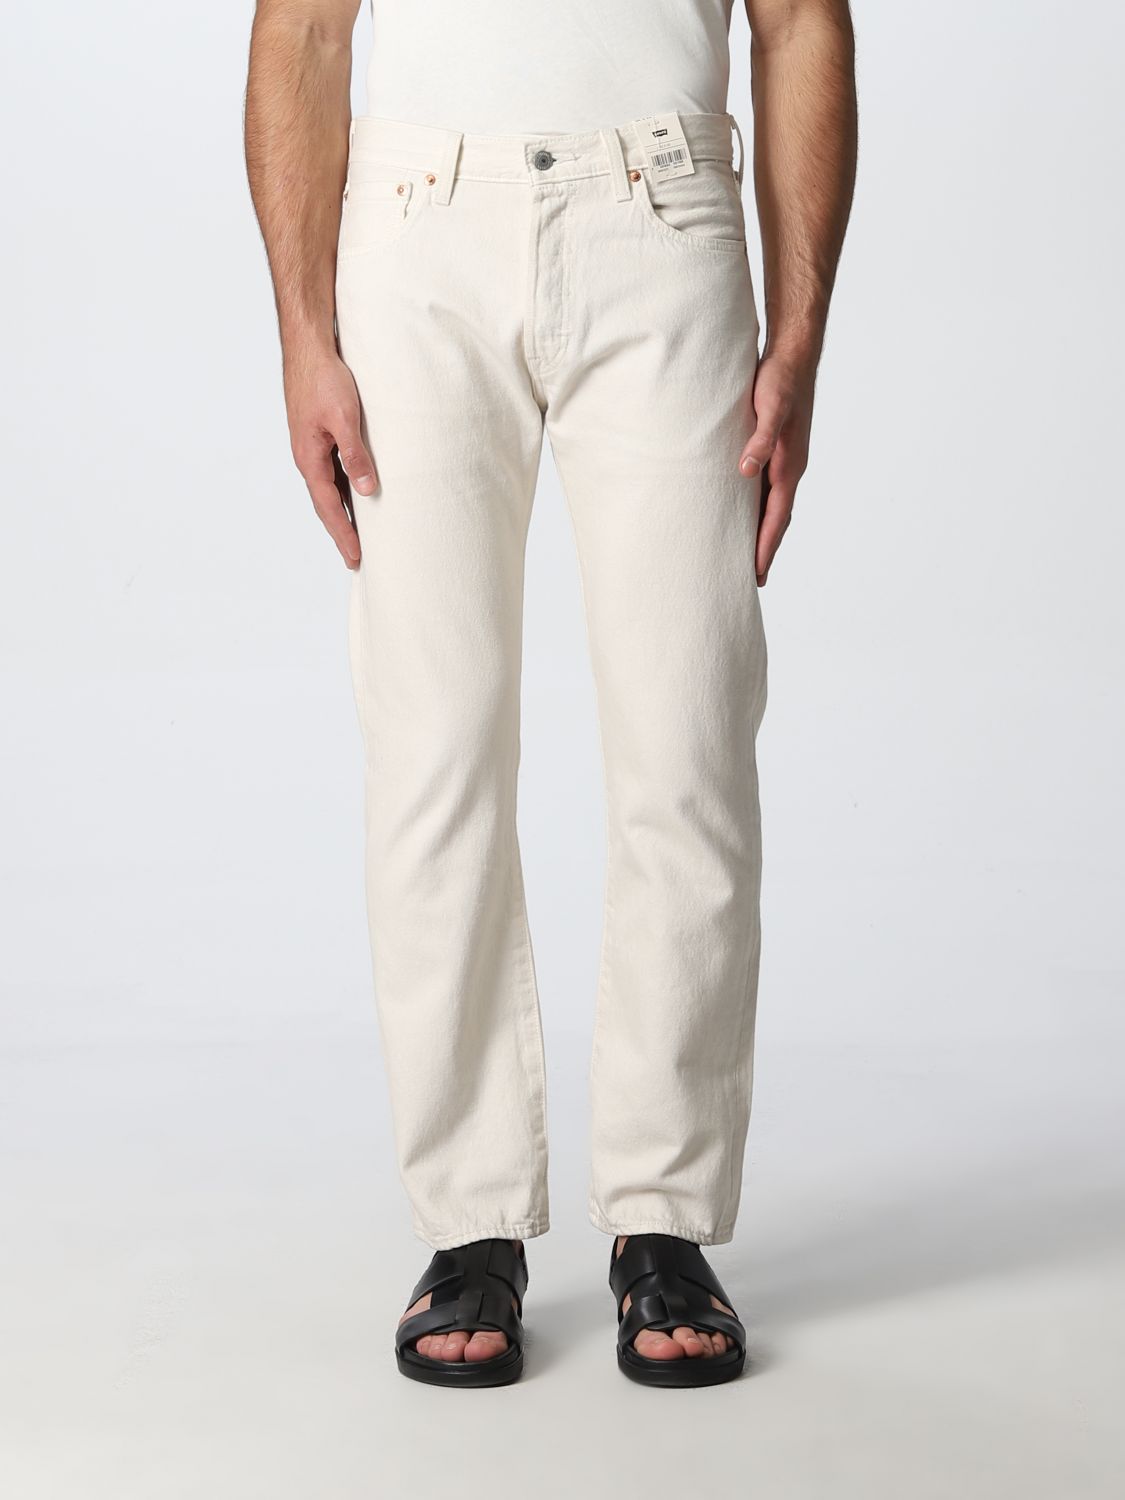 LEVI'S: Jeans men - White | Levi's jeans 005013279 online on 